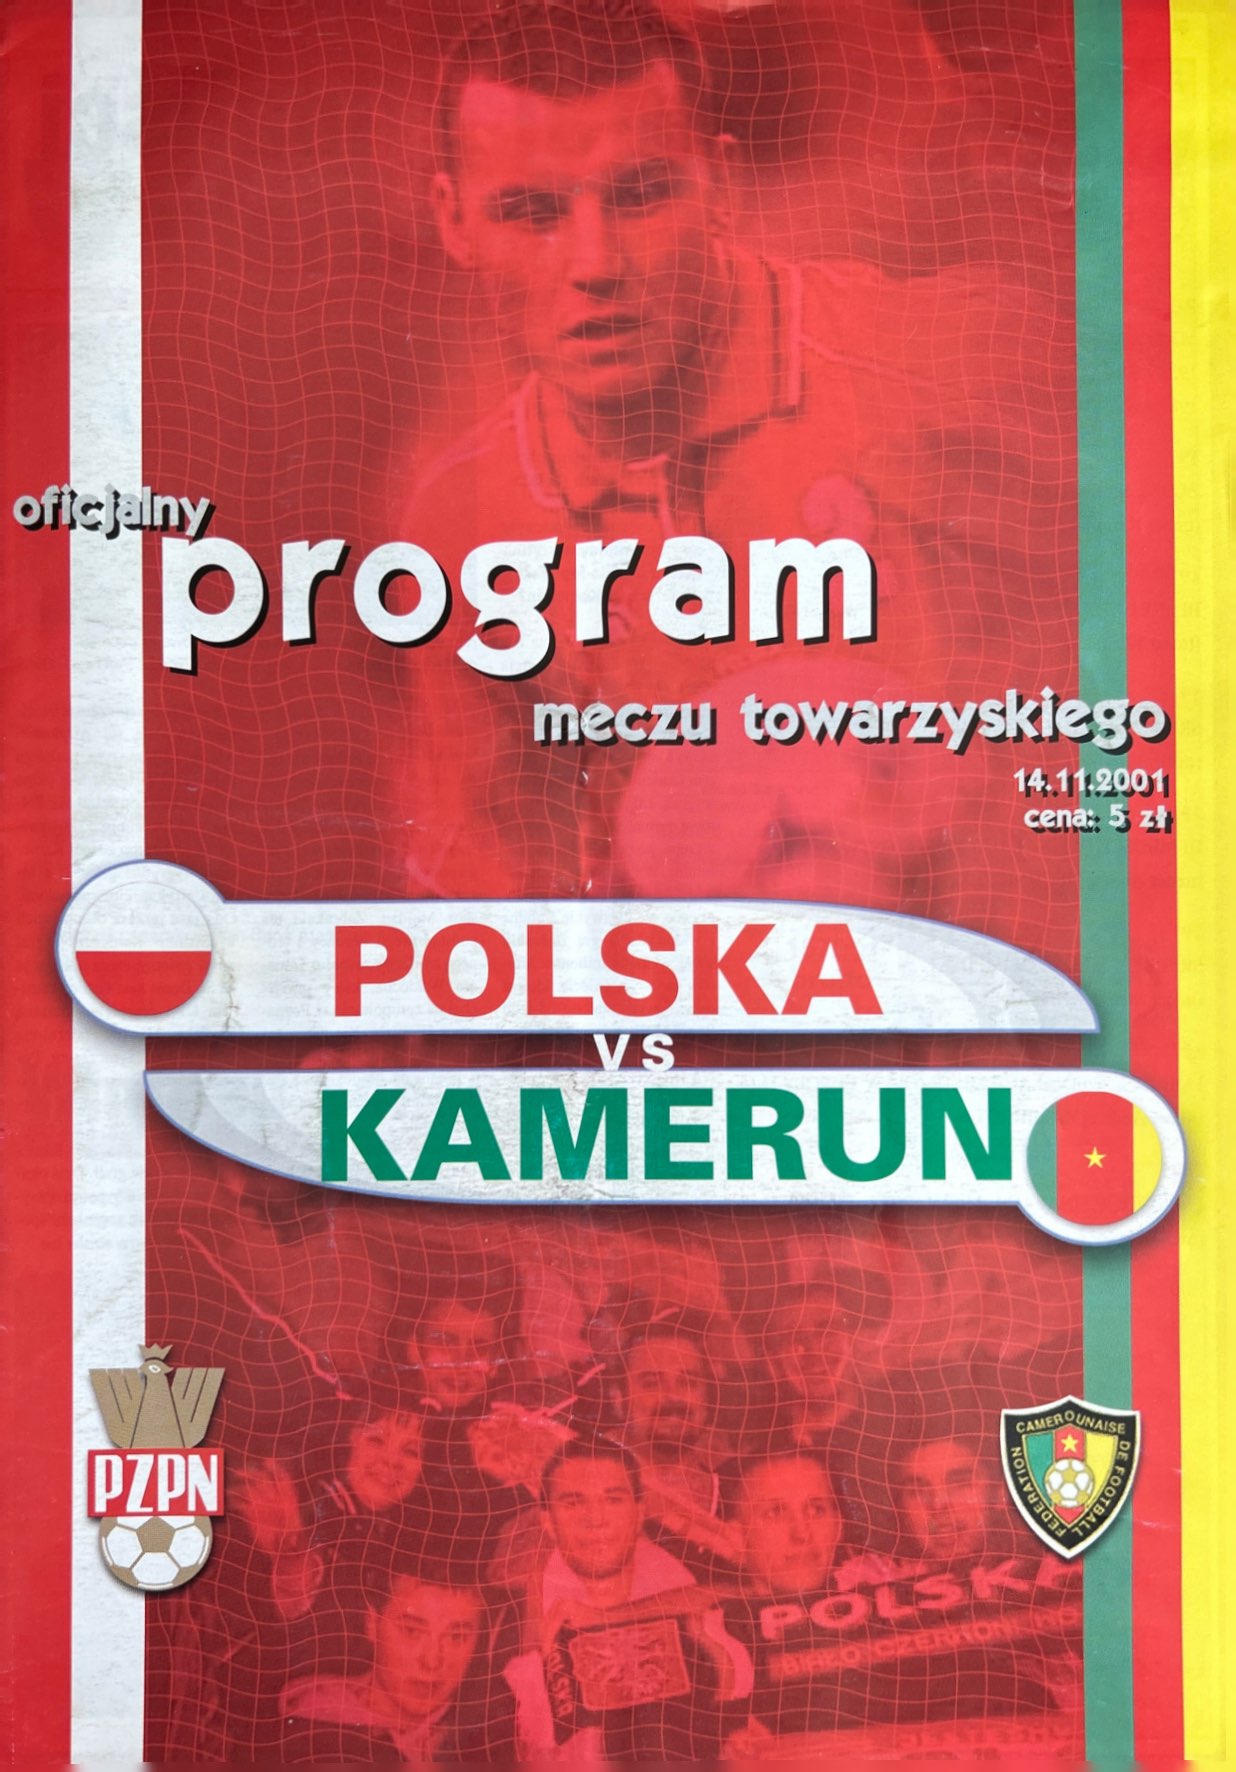 Program meczowy Polska - Kamerun 0:0 (14.11.2001)